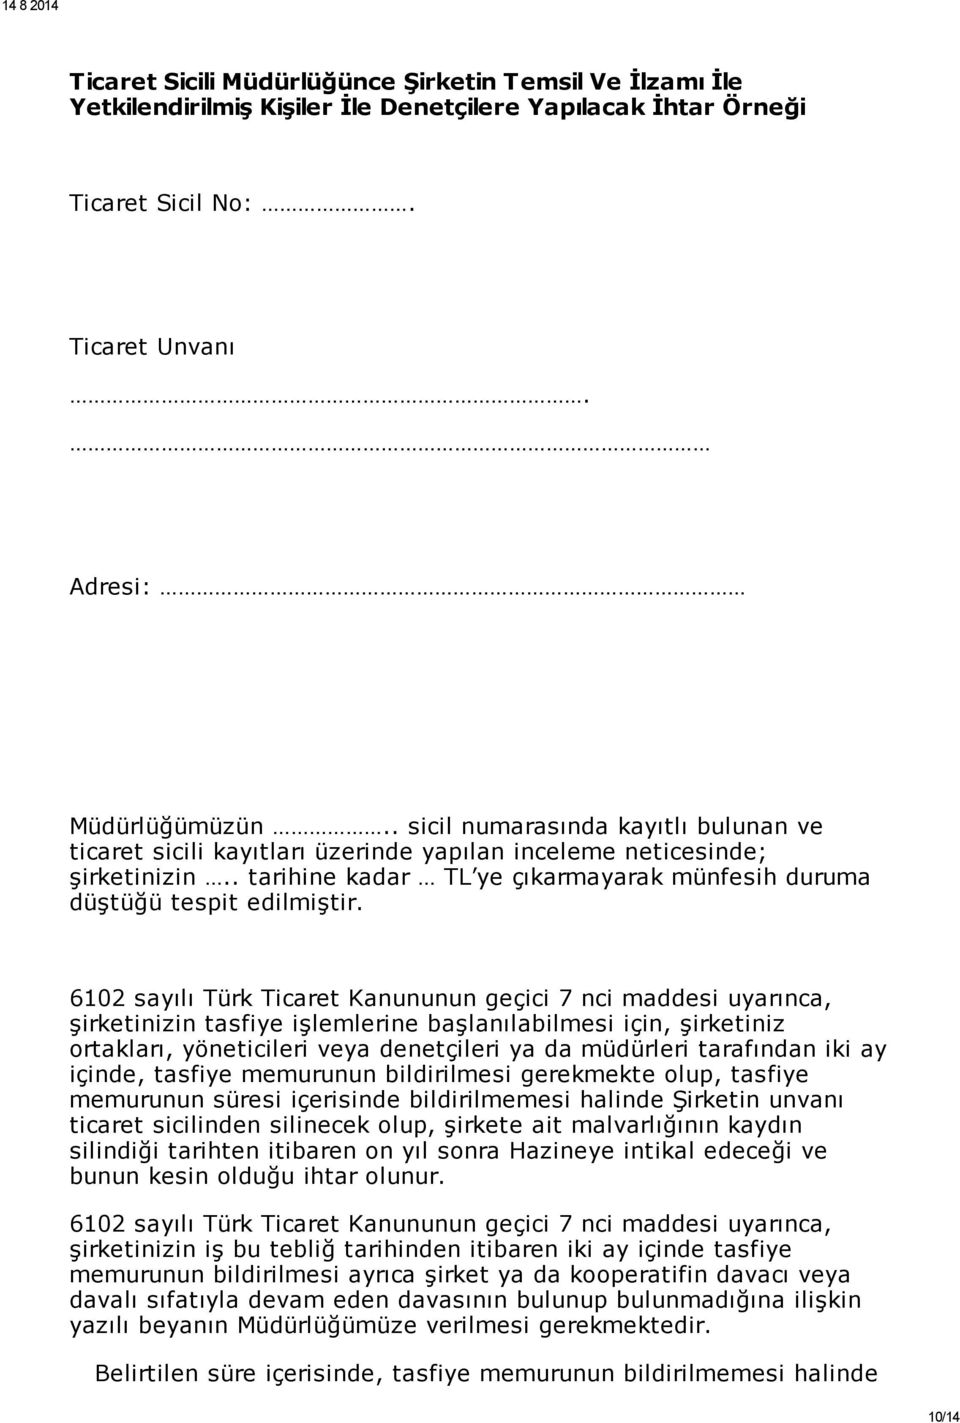 6102 sayılı Türk Ticaret Kanununun geçici 7 nci maddesi uyarınca, şirketinizin tasfiye işlemlerine başlanılabilmesi için, şirketiniz ortakları, yöneticileri veya denetçileri ya da müdürleri